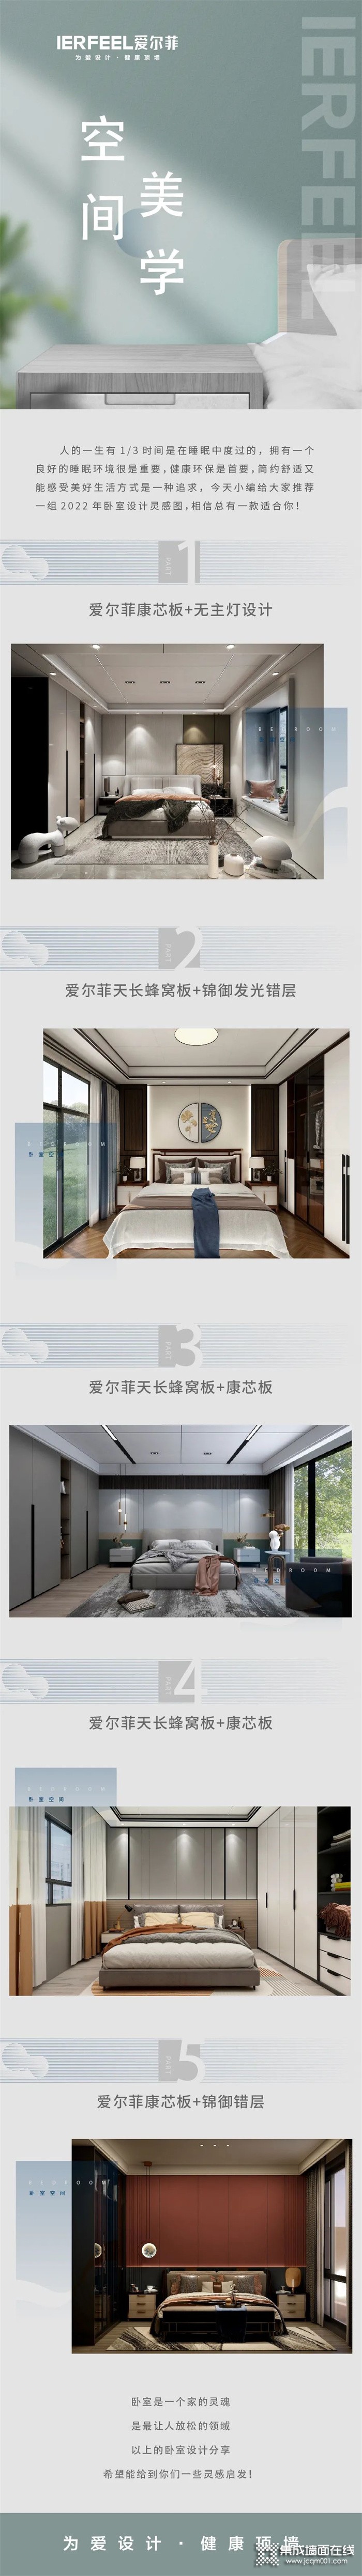 新品鉴赏 | 爱尔菲集成顶墙2022最新卧室创意设计